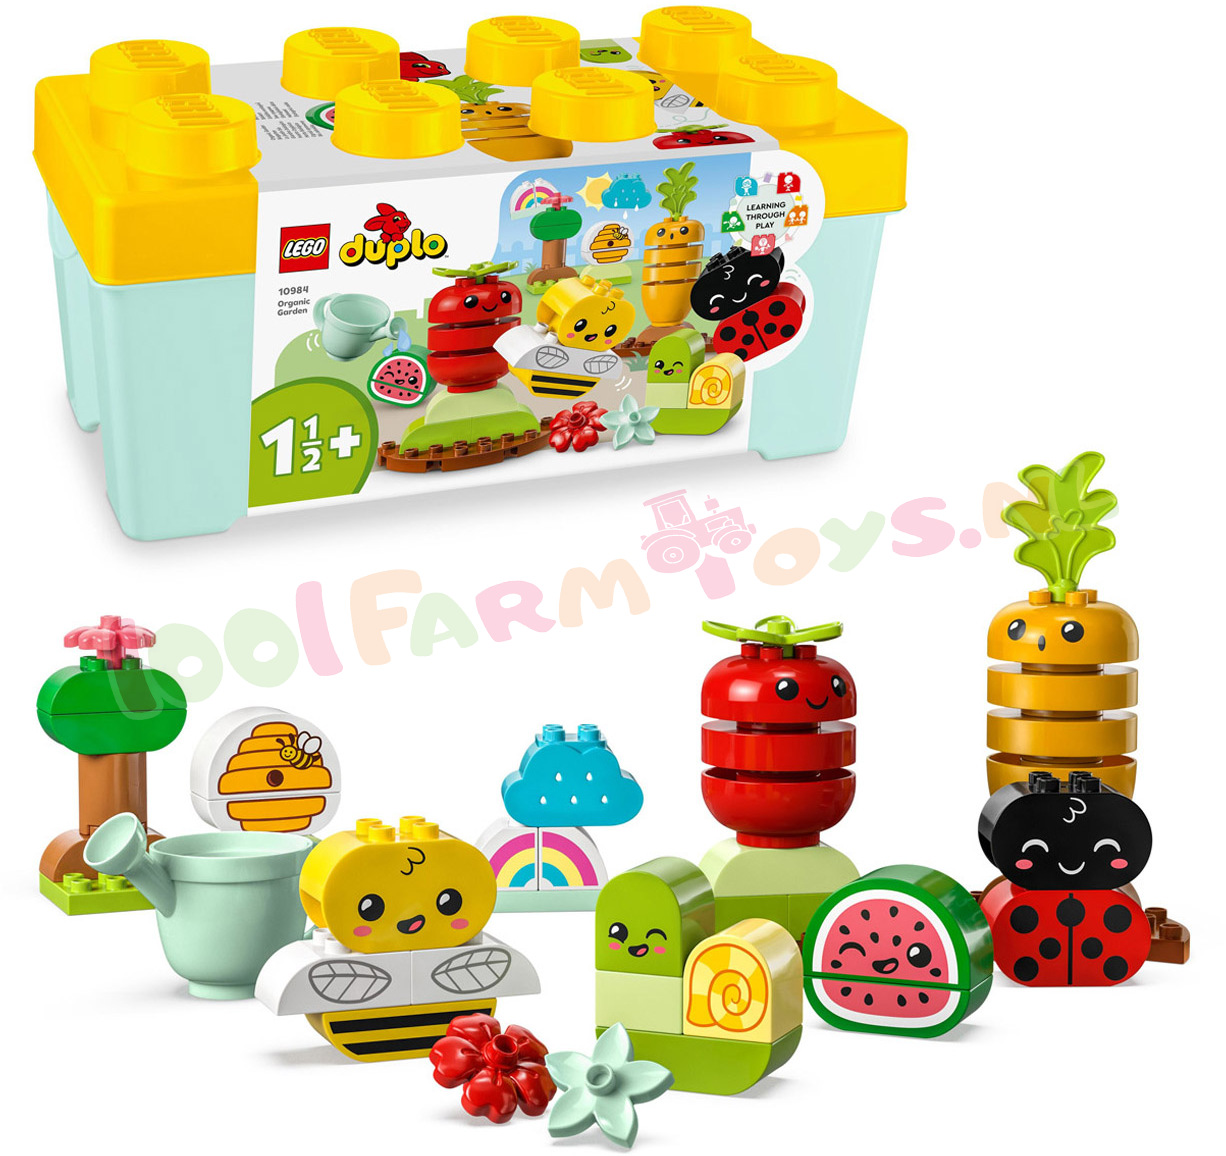 LEGO DUPLO BioTuintje plus Mooie Box - 10984 - DUPLO - 1001Farmtoys landbouwspeelgoed Laat je jonge kind spelenderwijs van alles over de natuur